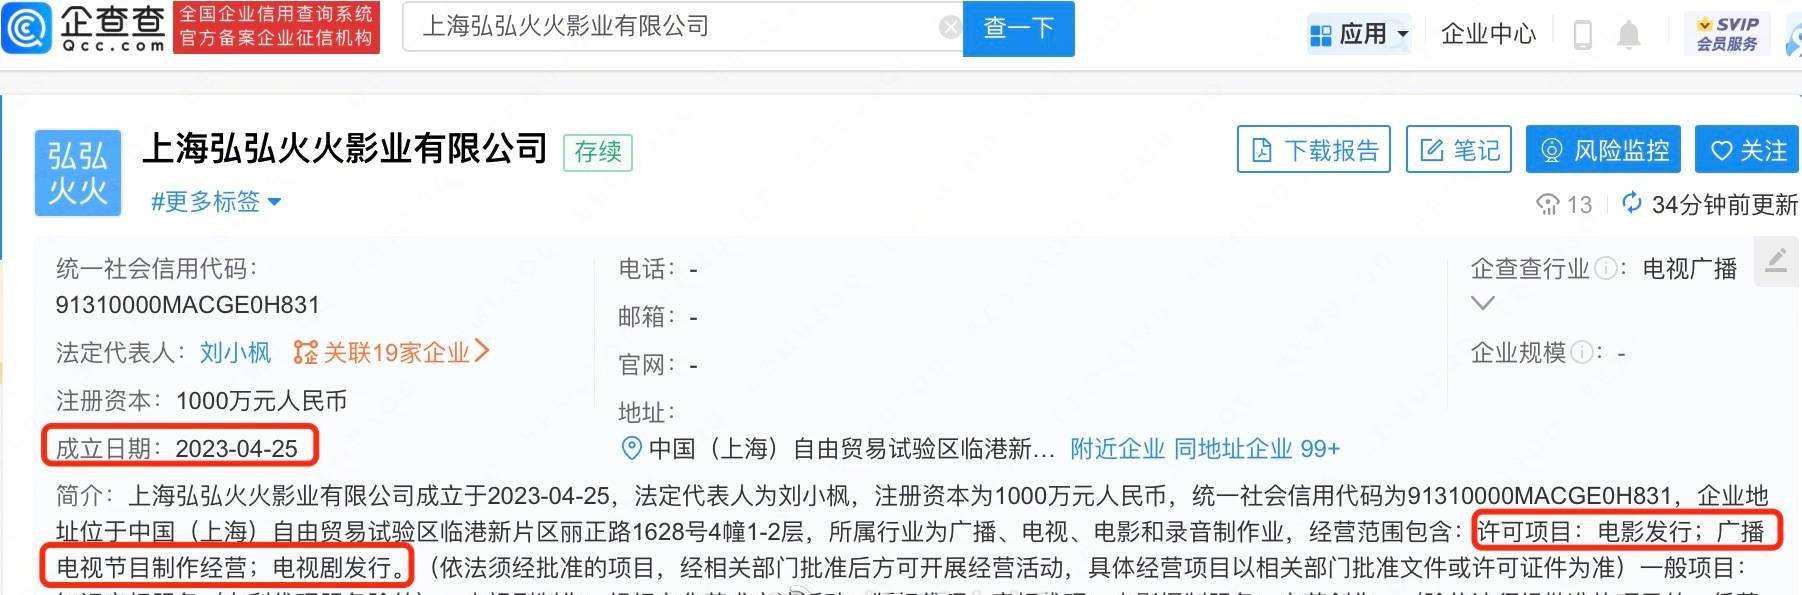 刘诗诗赵丽颖成立新公司 两人投资版图已跨7省市 